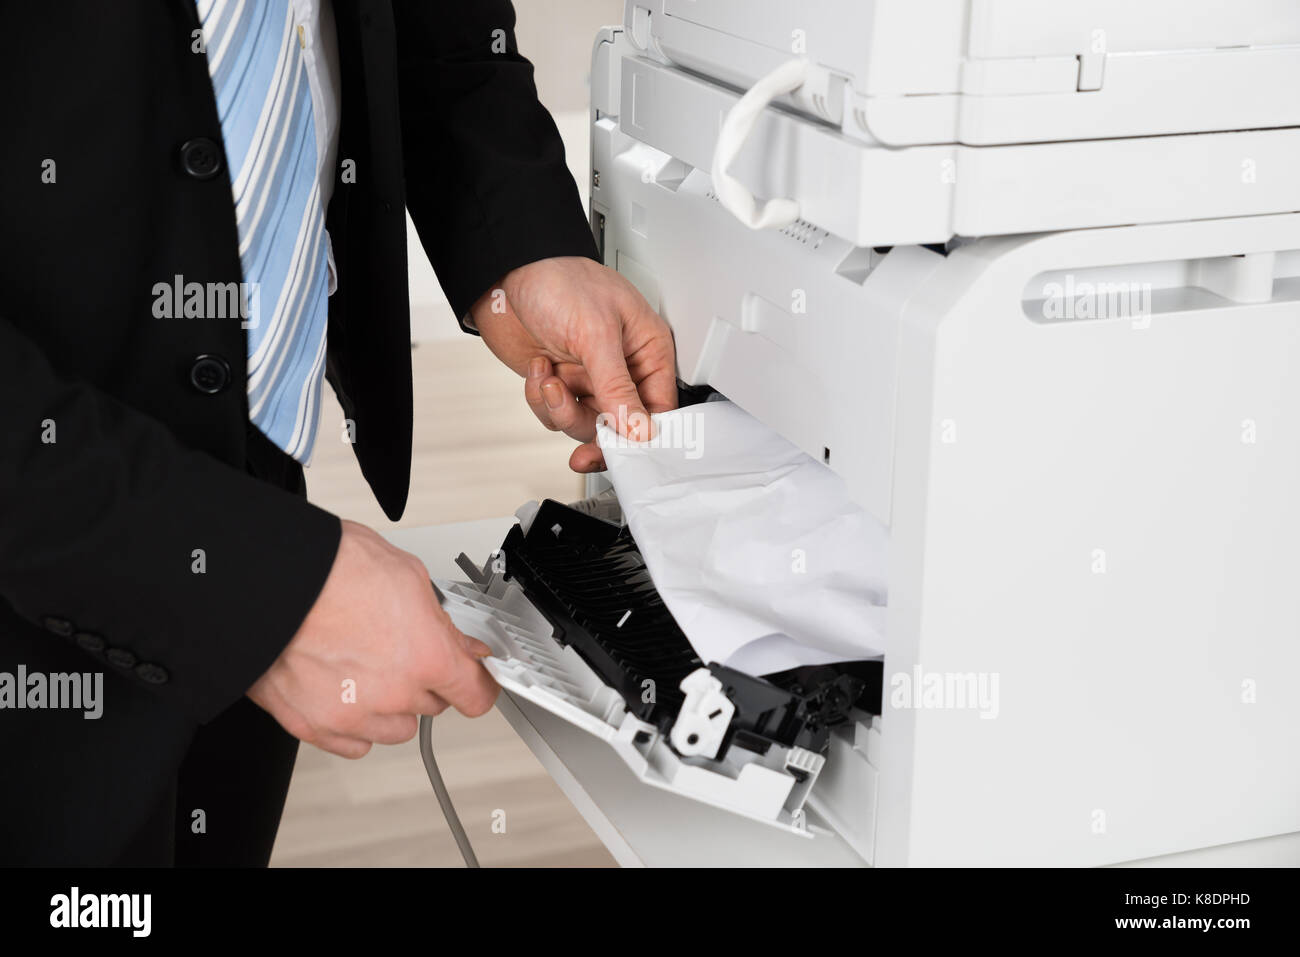 Immagine ritagliata di imprenditore di rimuovere la carta bloccata nella stampante in ufficio Foto Stock